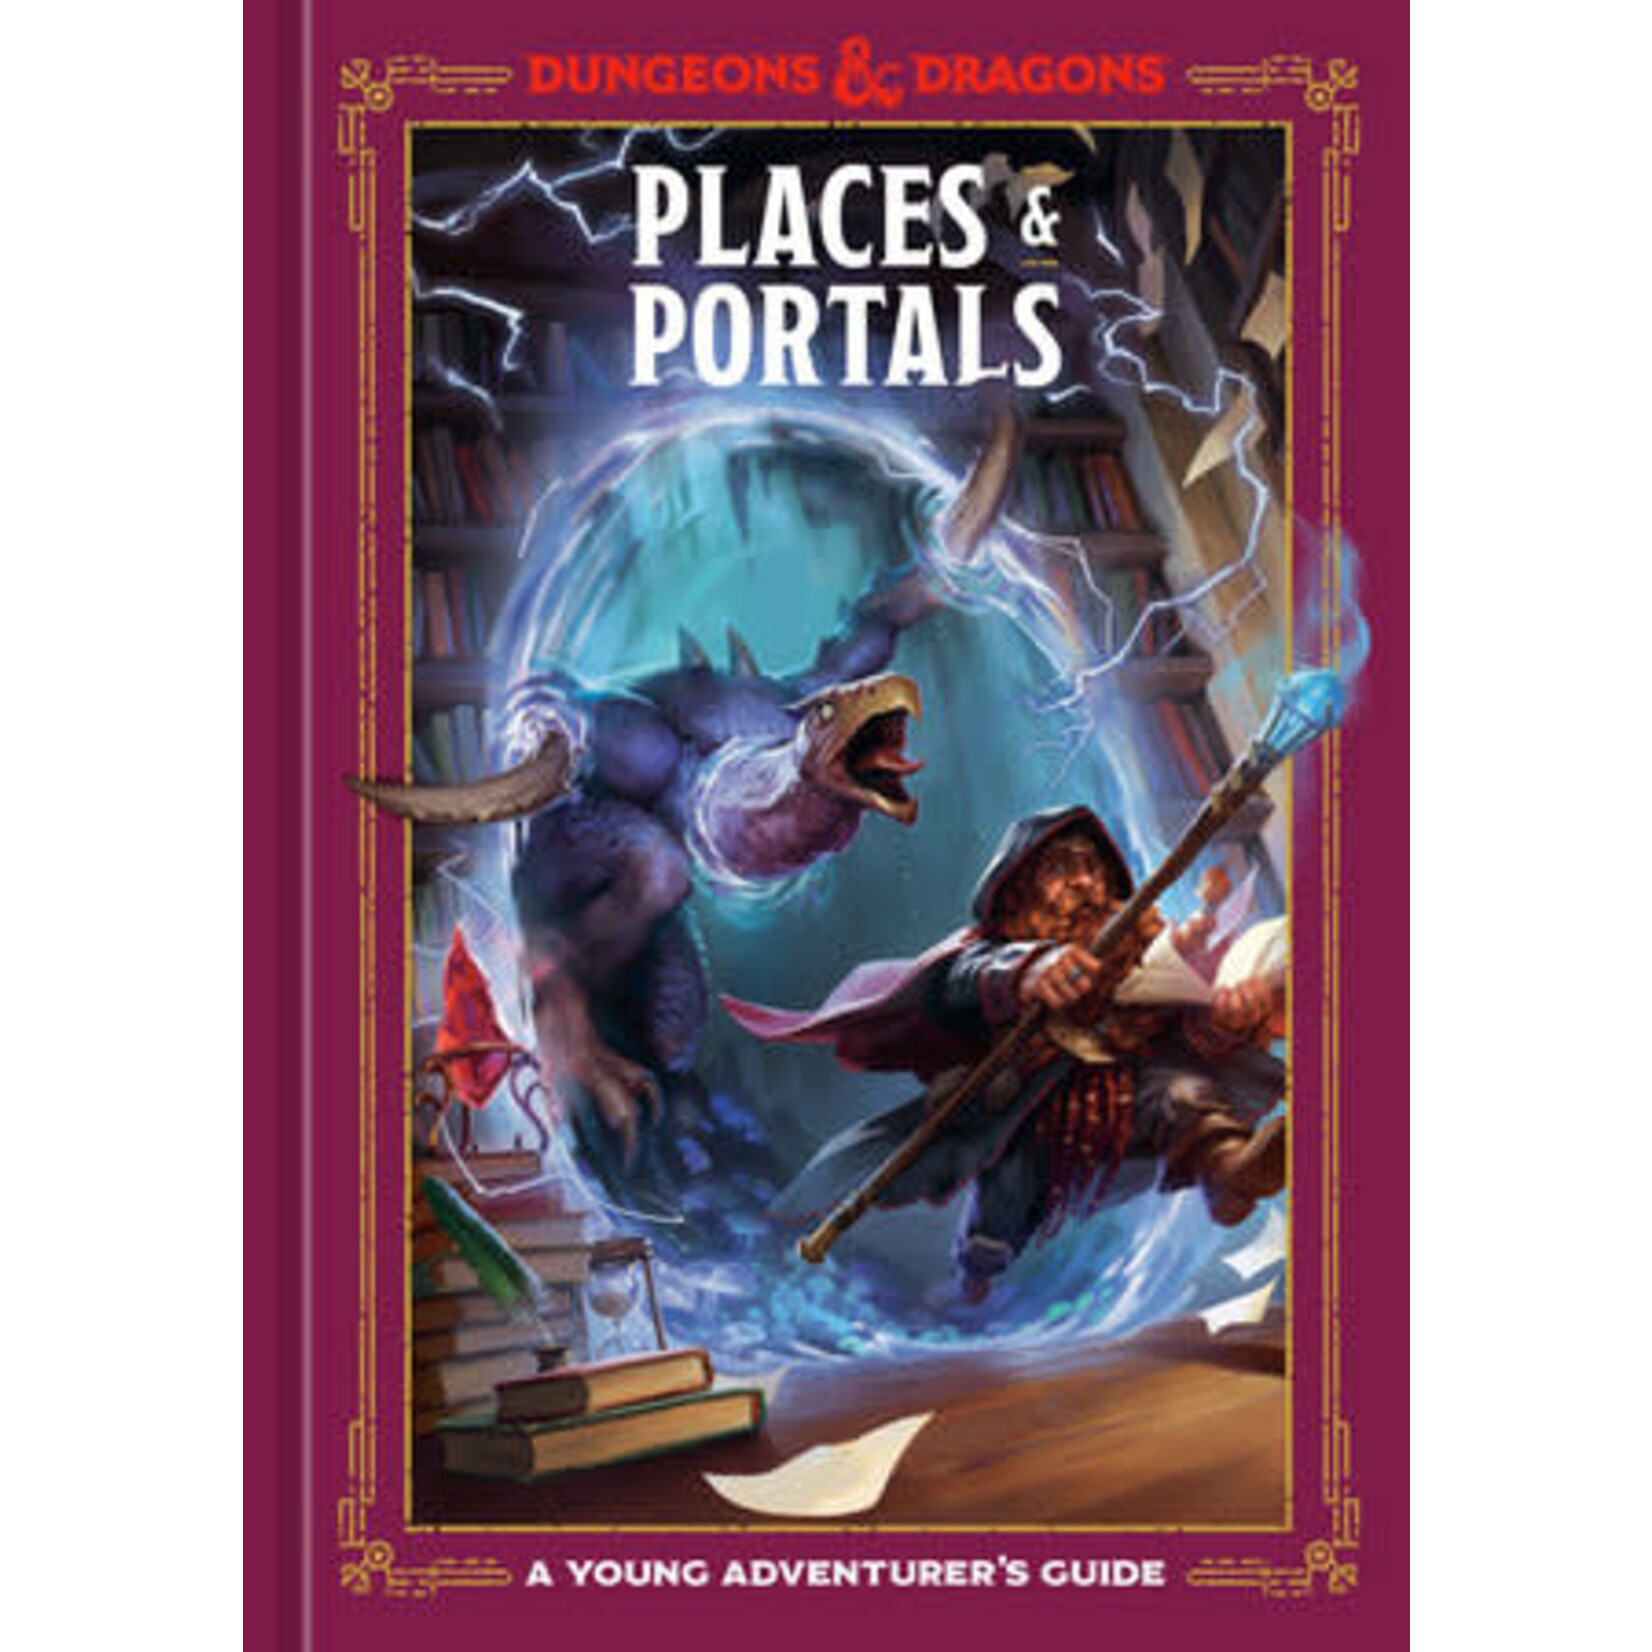 Penguin Random House D&D: Young Adventurer's Guide - Places & Portals